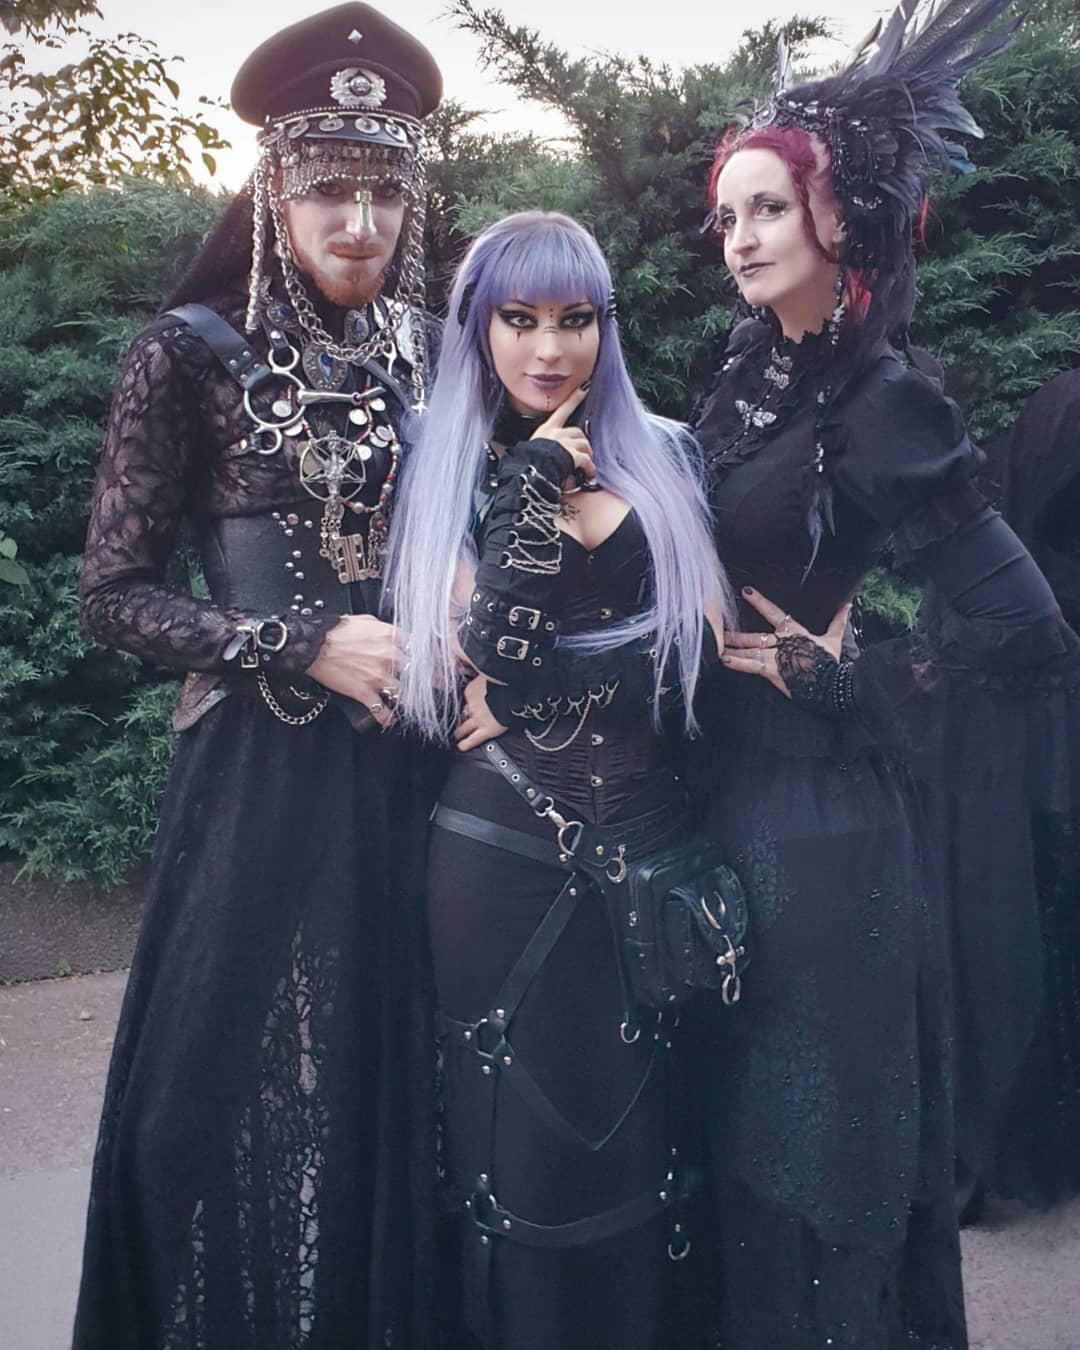 Вампиры и прочая нечисть собрались на фестивале готов в Германии